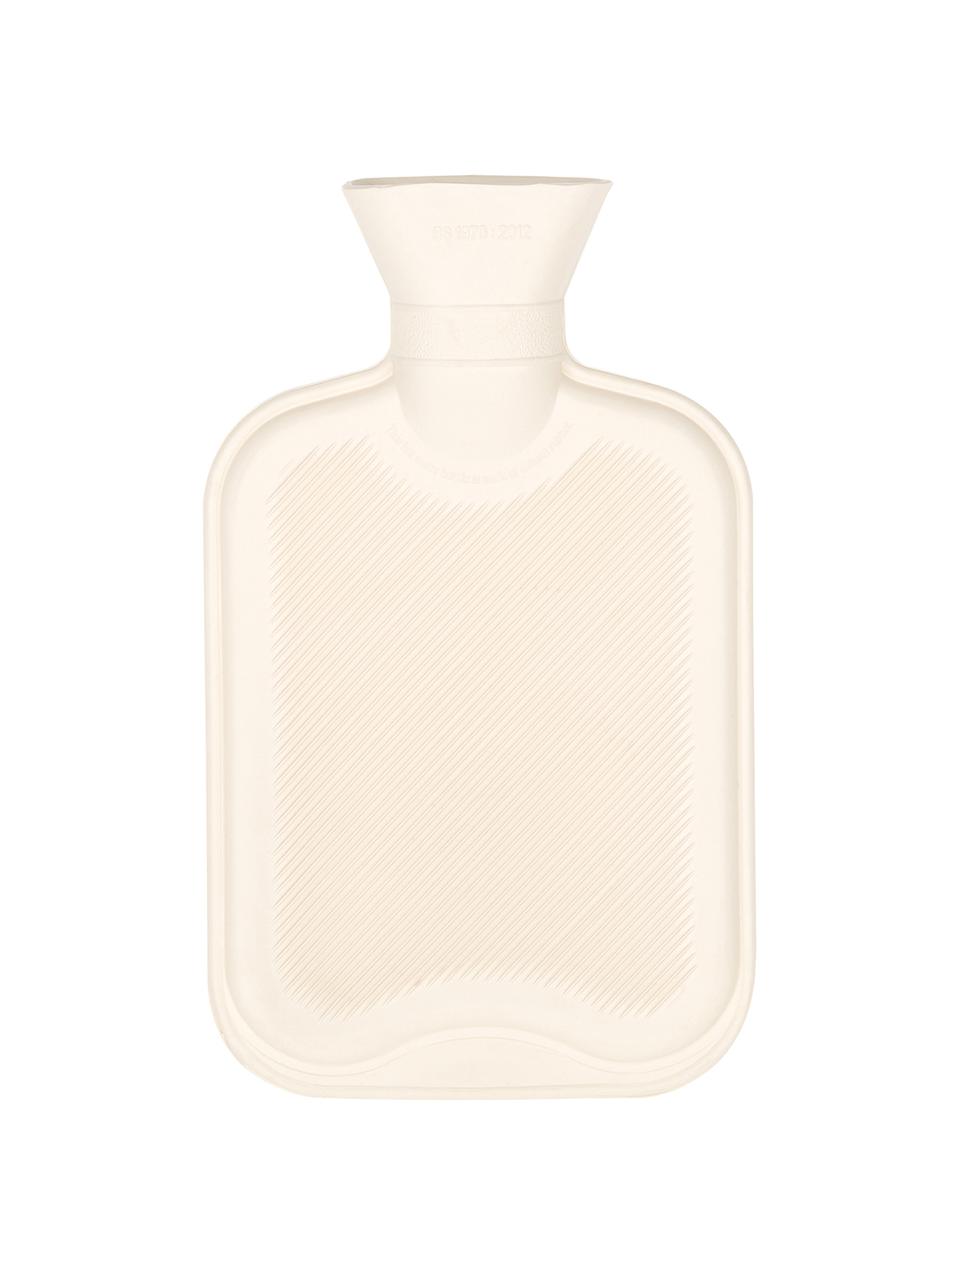 Cashmere-Wärmflasche Florentina, Bezug: 70% Kaschmir, 30% Wolle, Nougat, Hellbeige, B 19 x L 30 cm